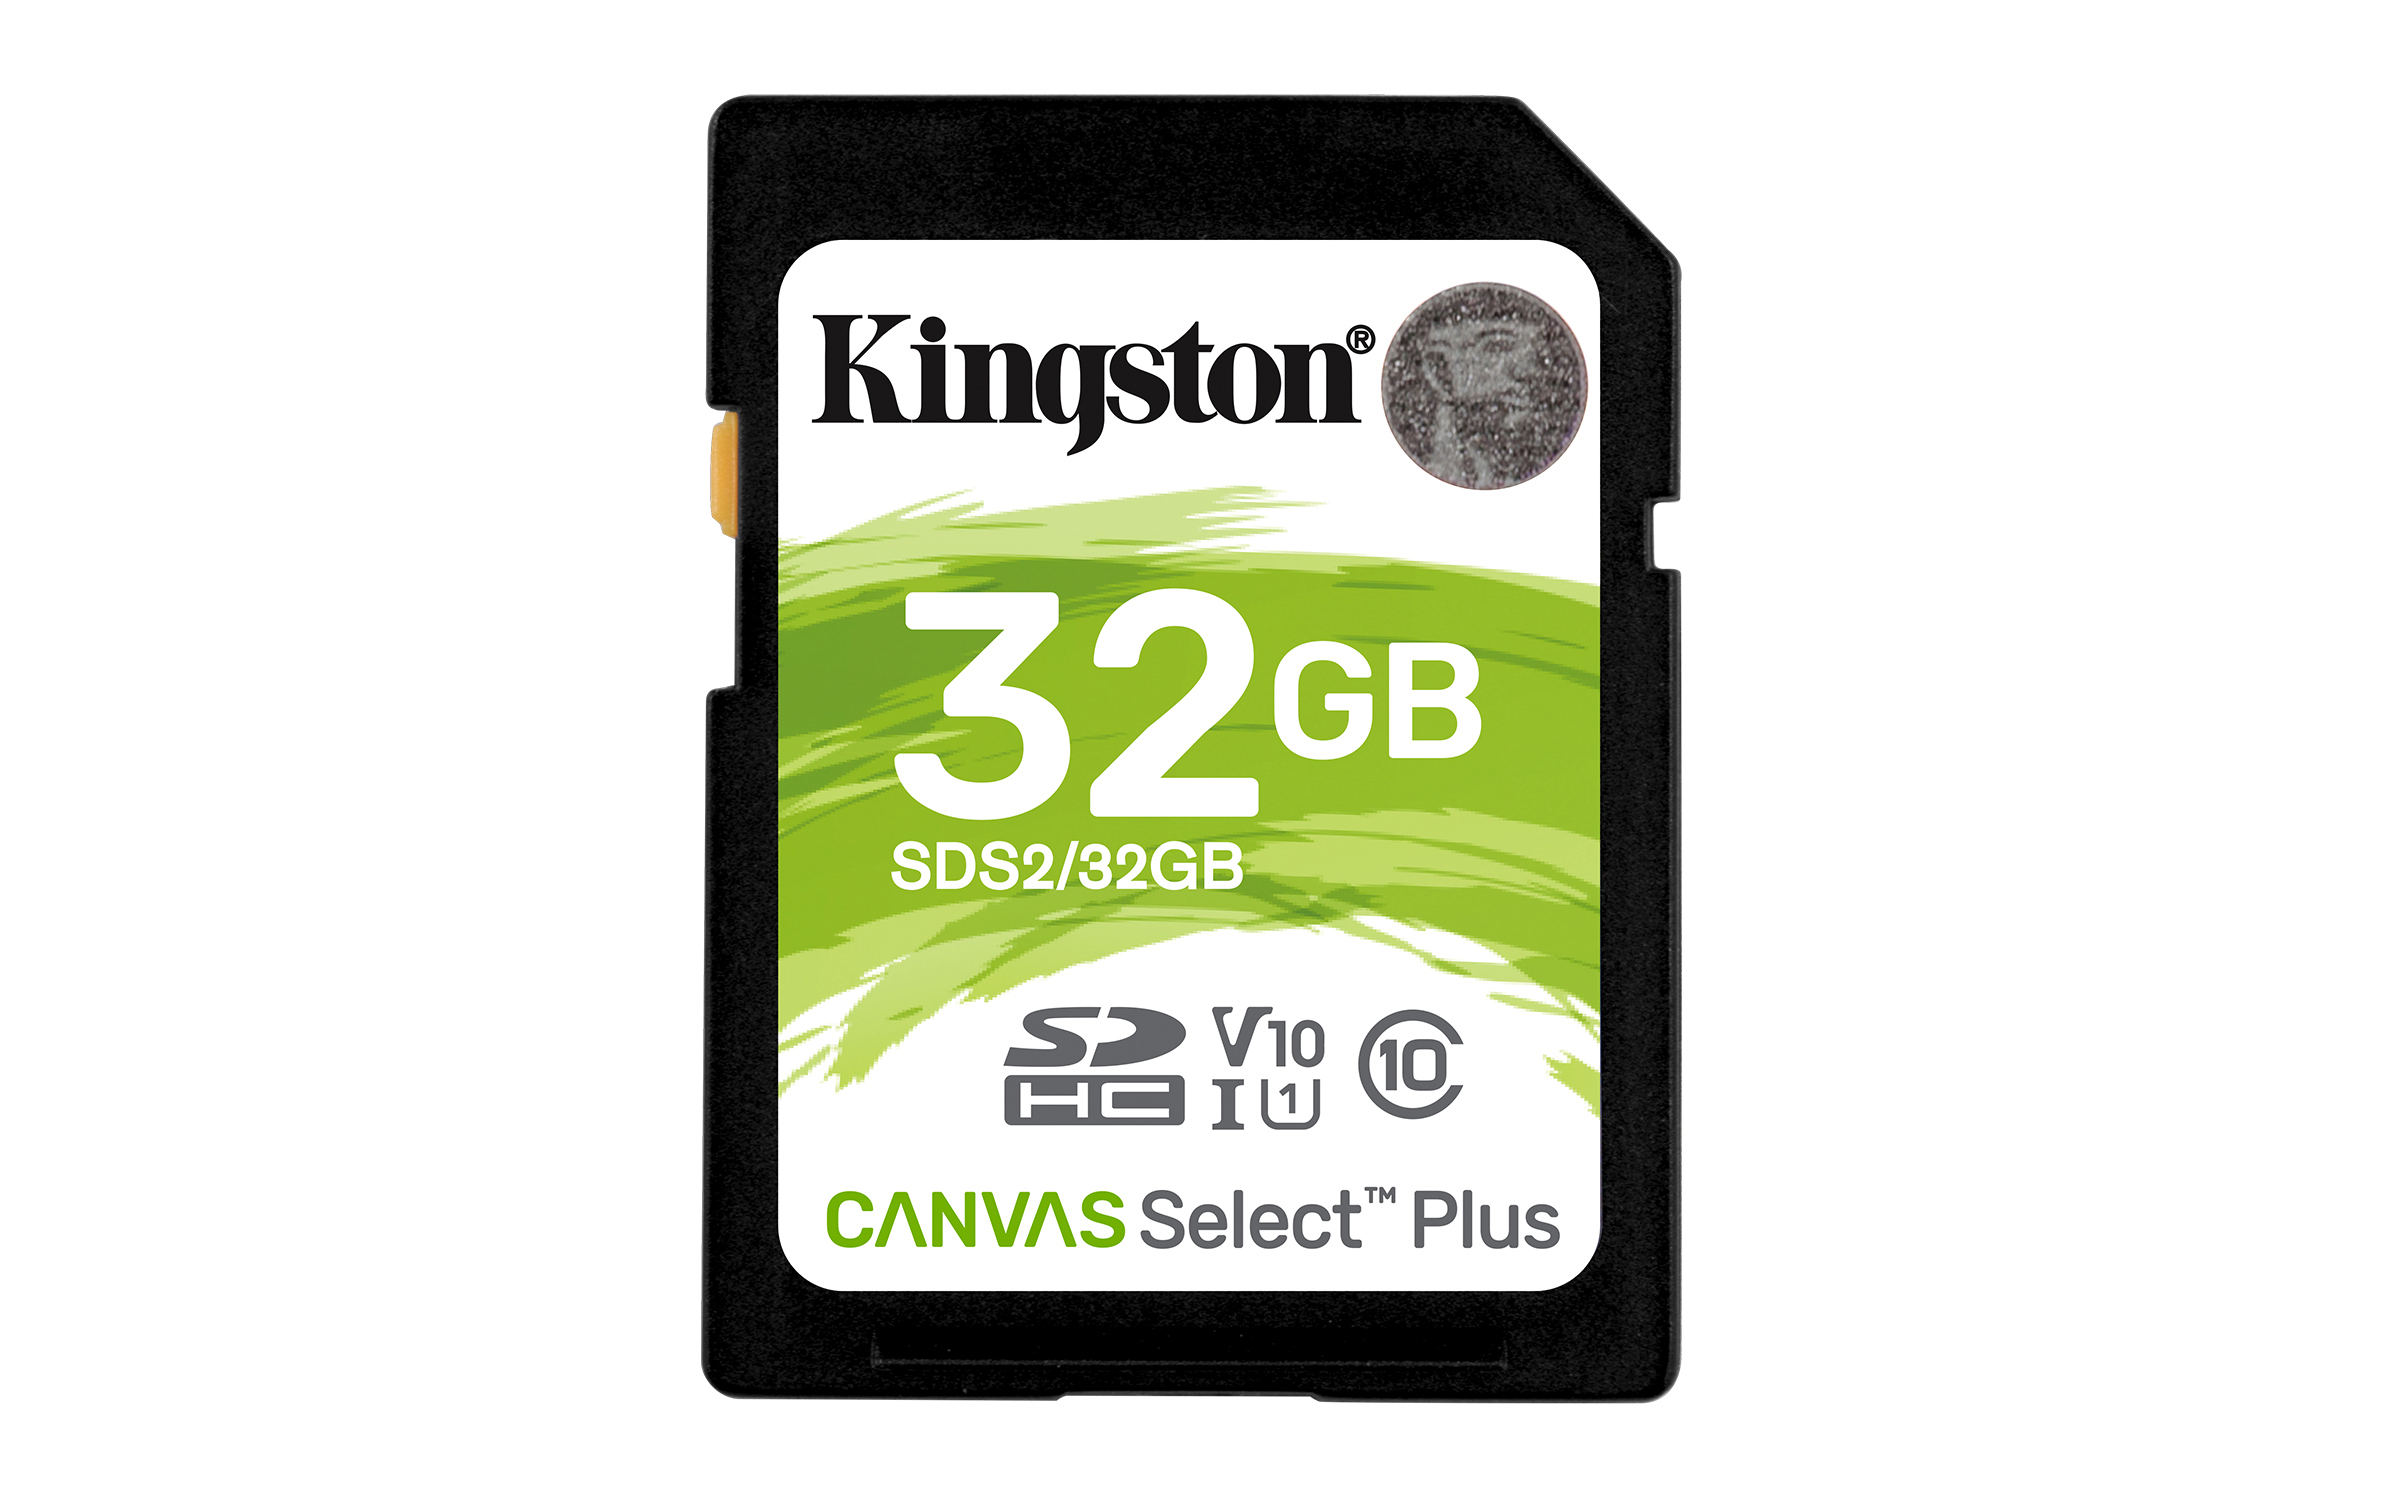 KINGSTON TARJETA SDS2 32GB